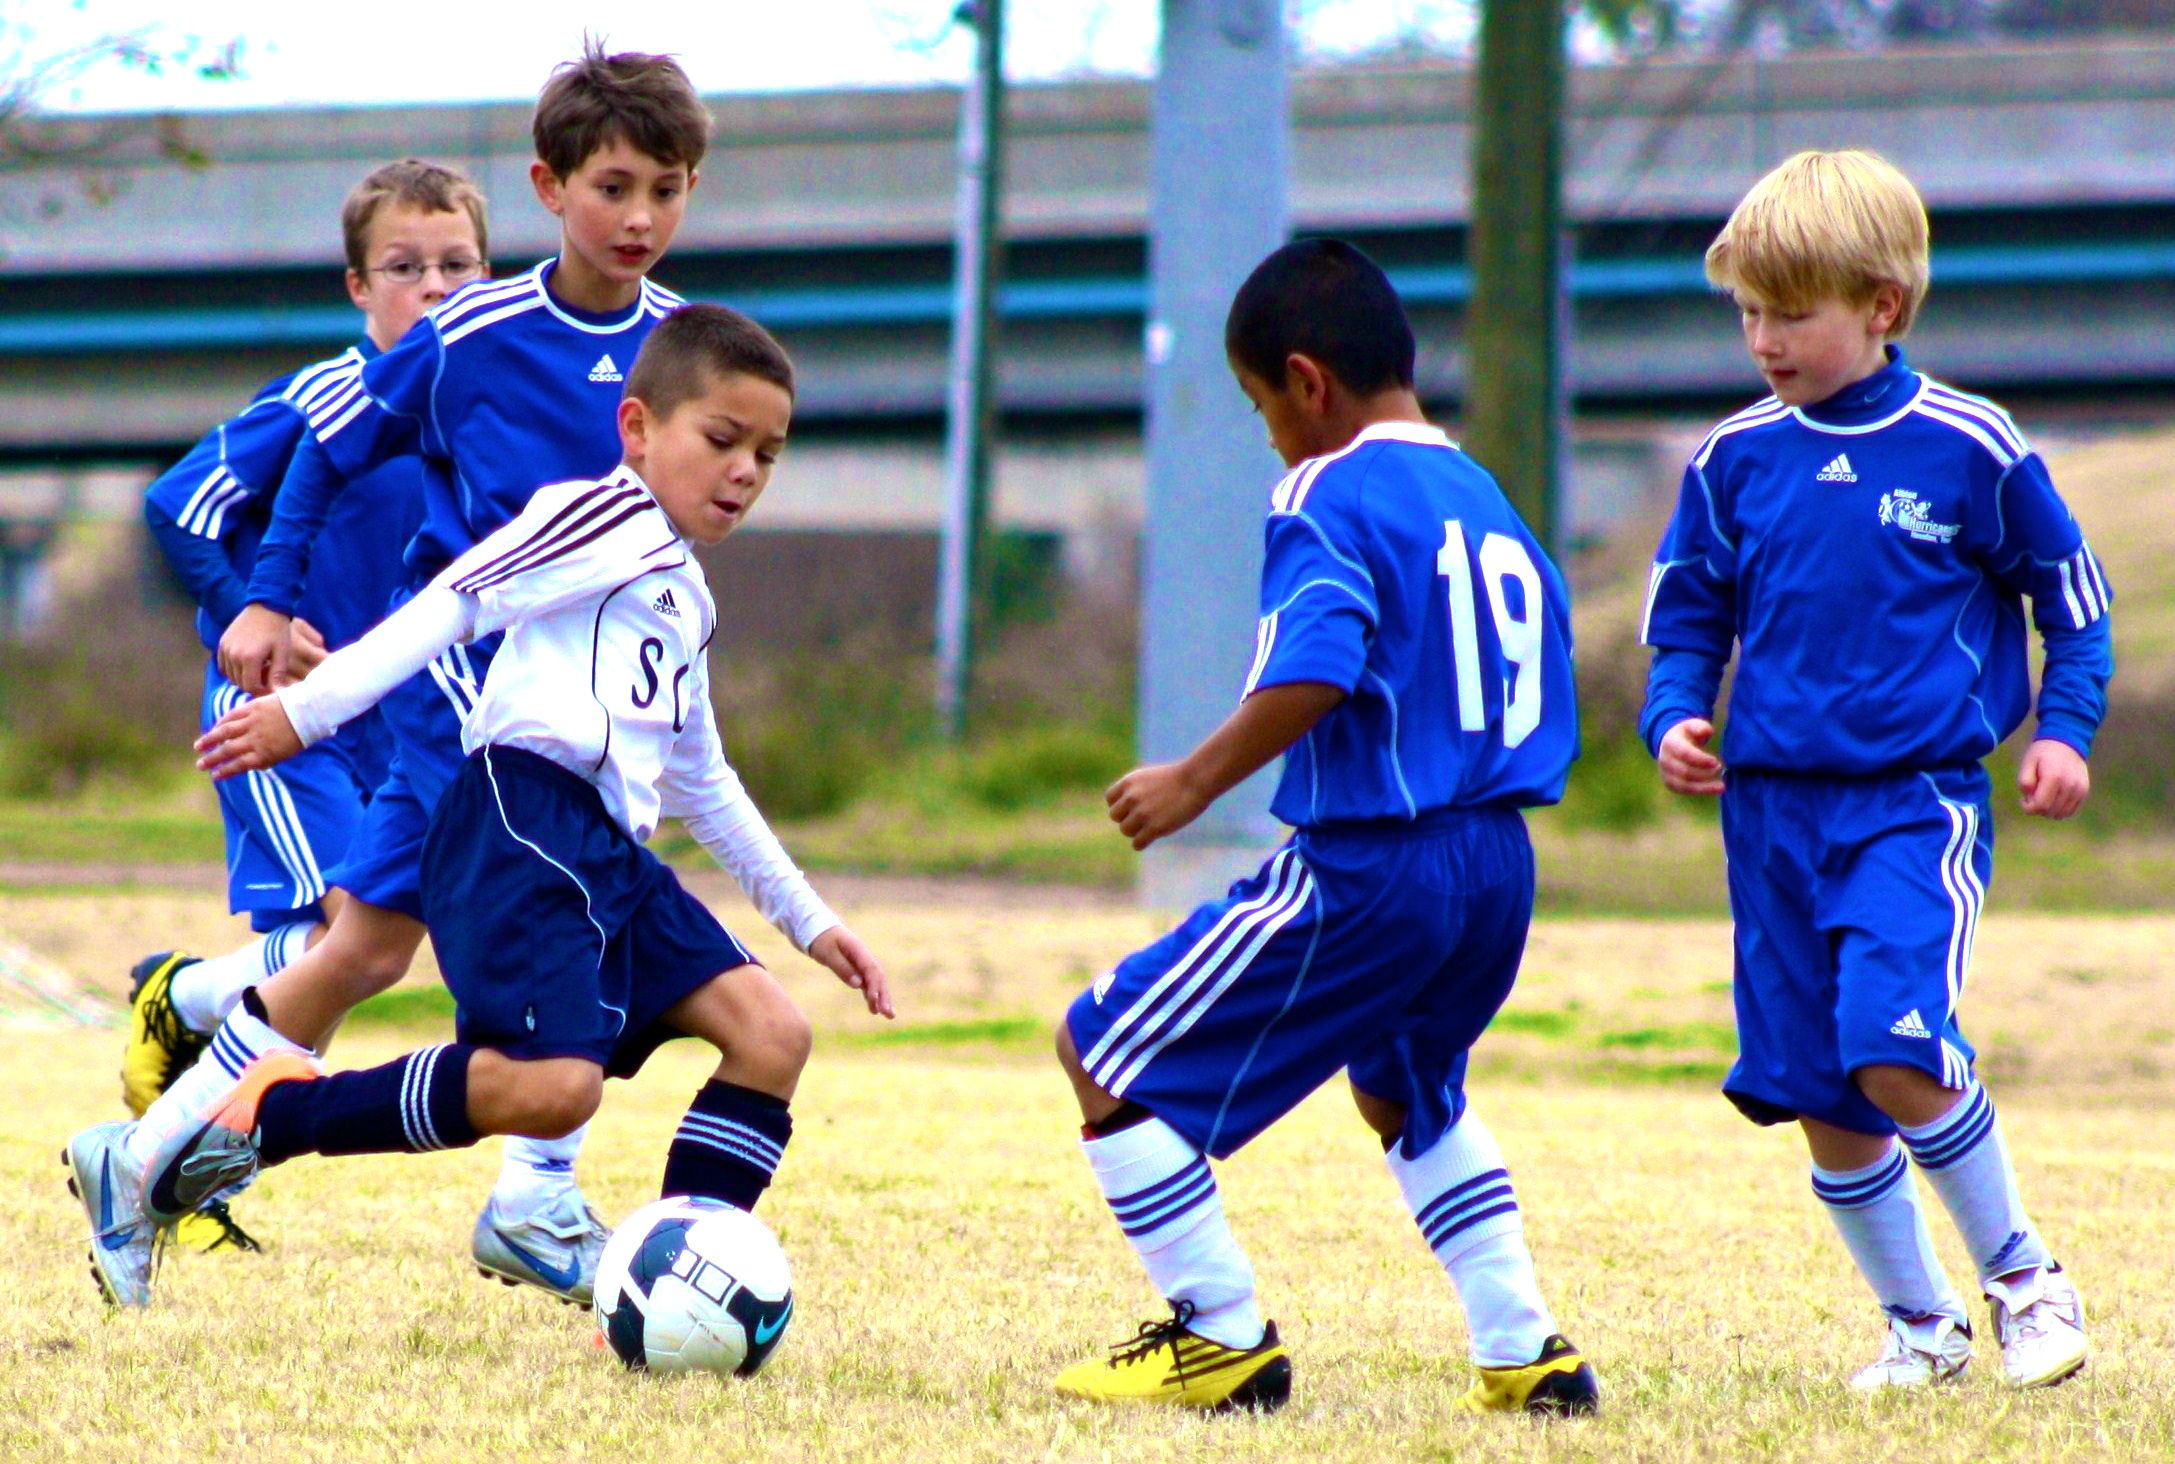 Футбол для детей